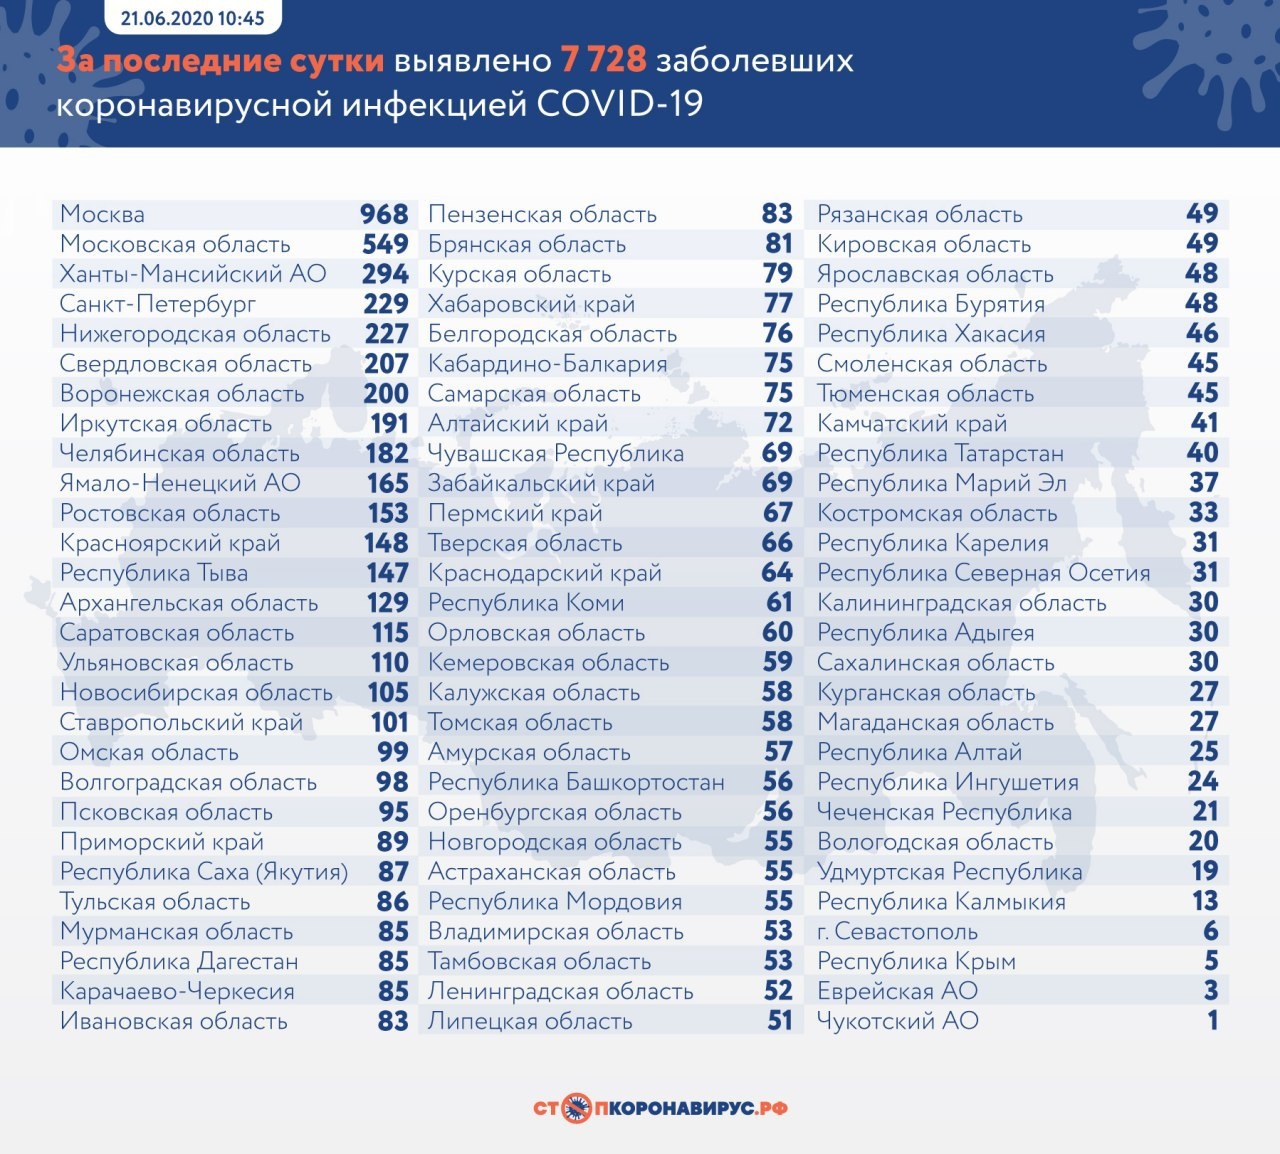 В Томской области зарегистрировано 58 новых случаев заболевания коронавирусом, восемь человек выздор